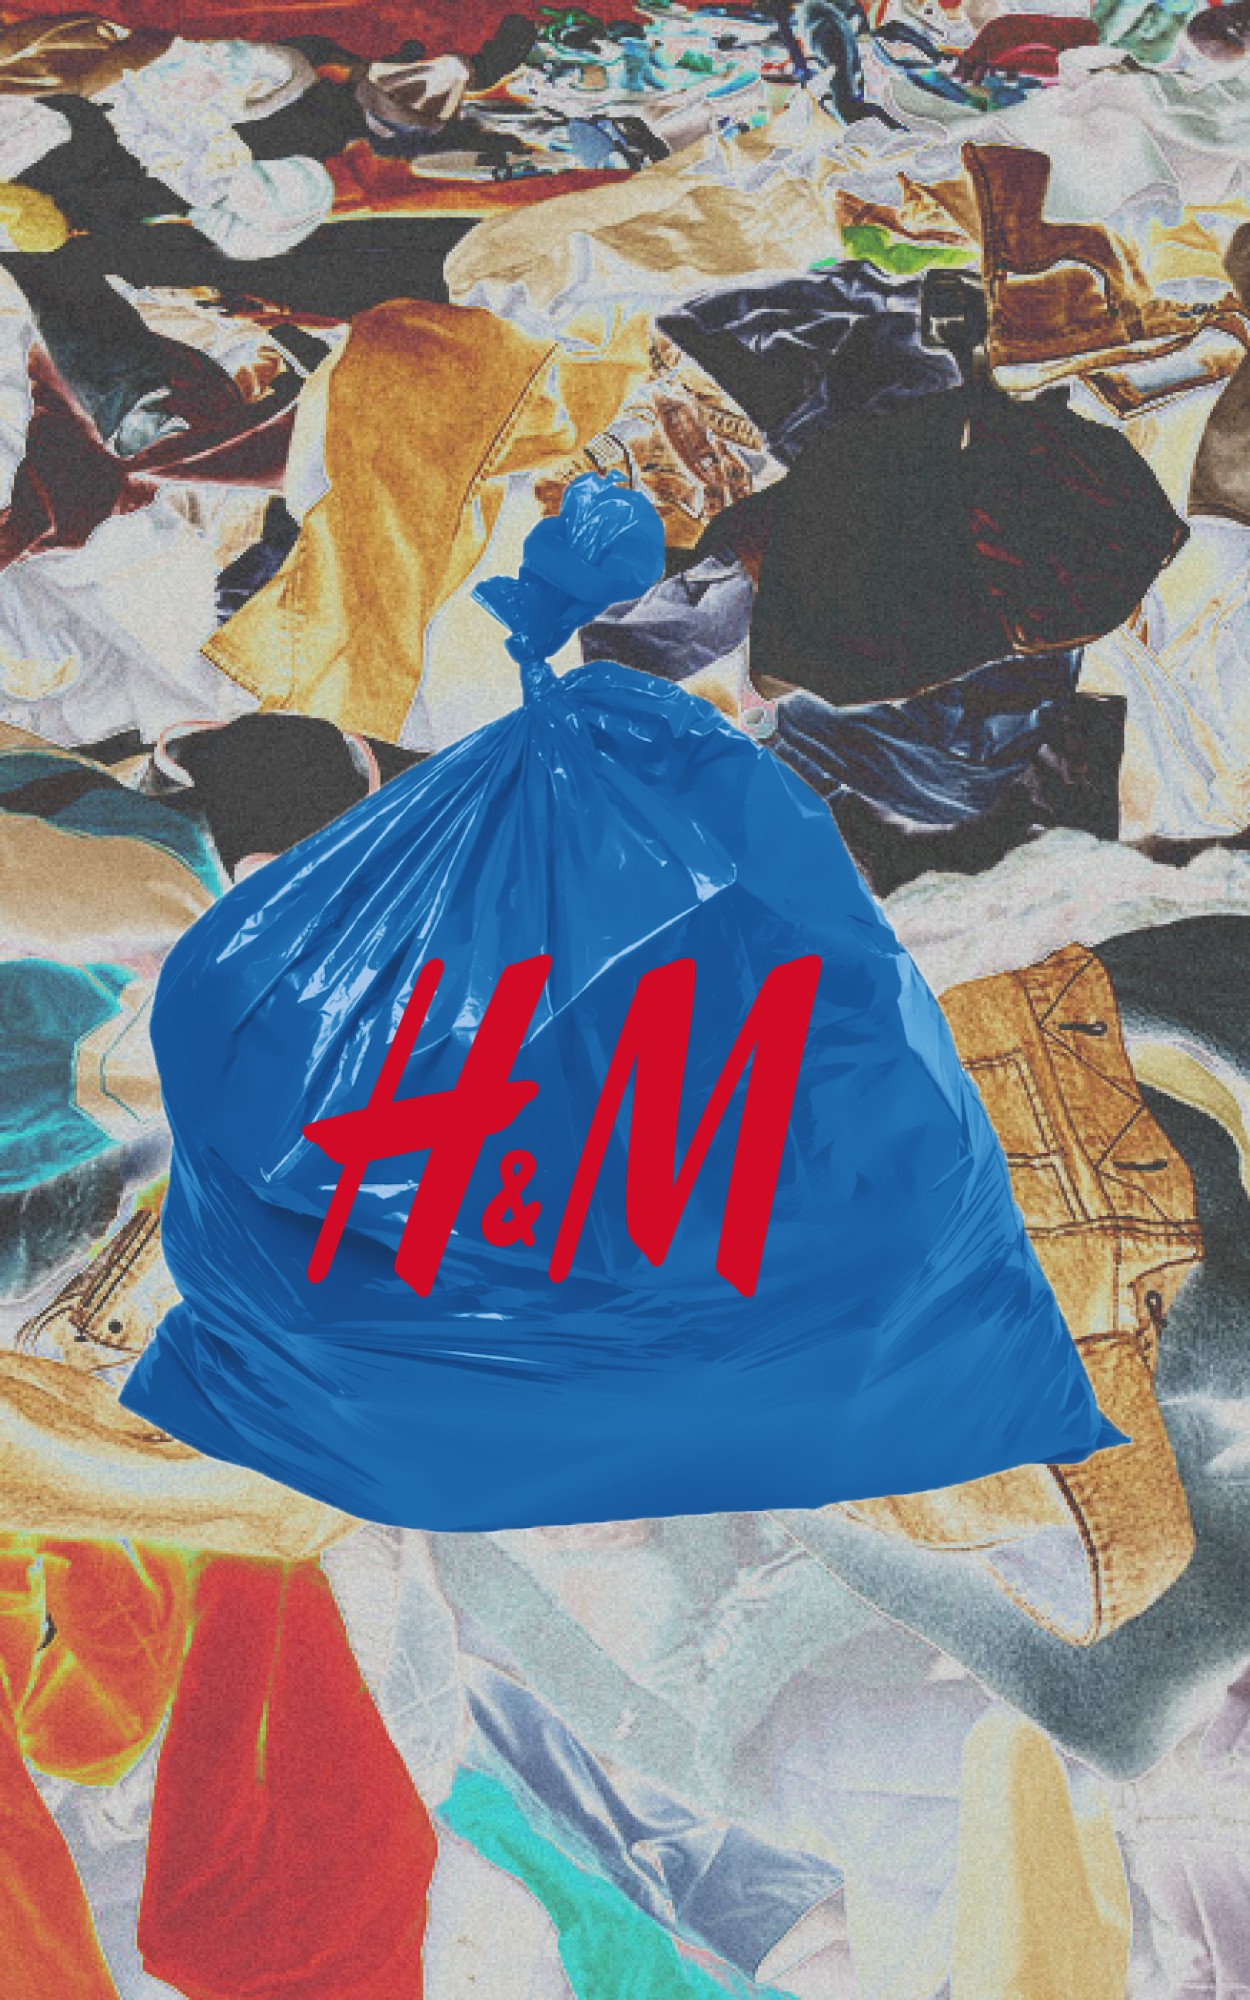 Переработка на развес. Как связаны H&M, Vagabond и оптовый секонд-хенд в Лыткарино